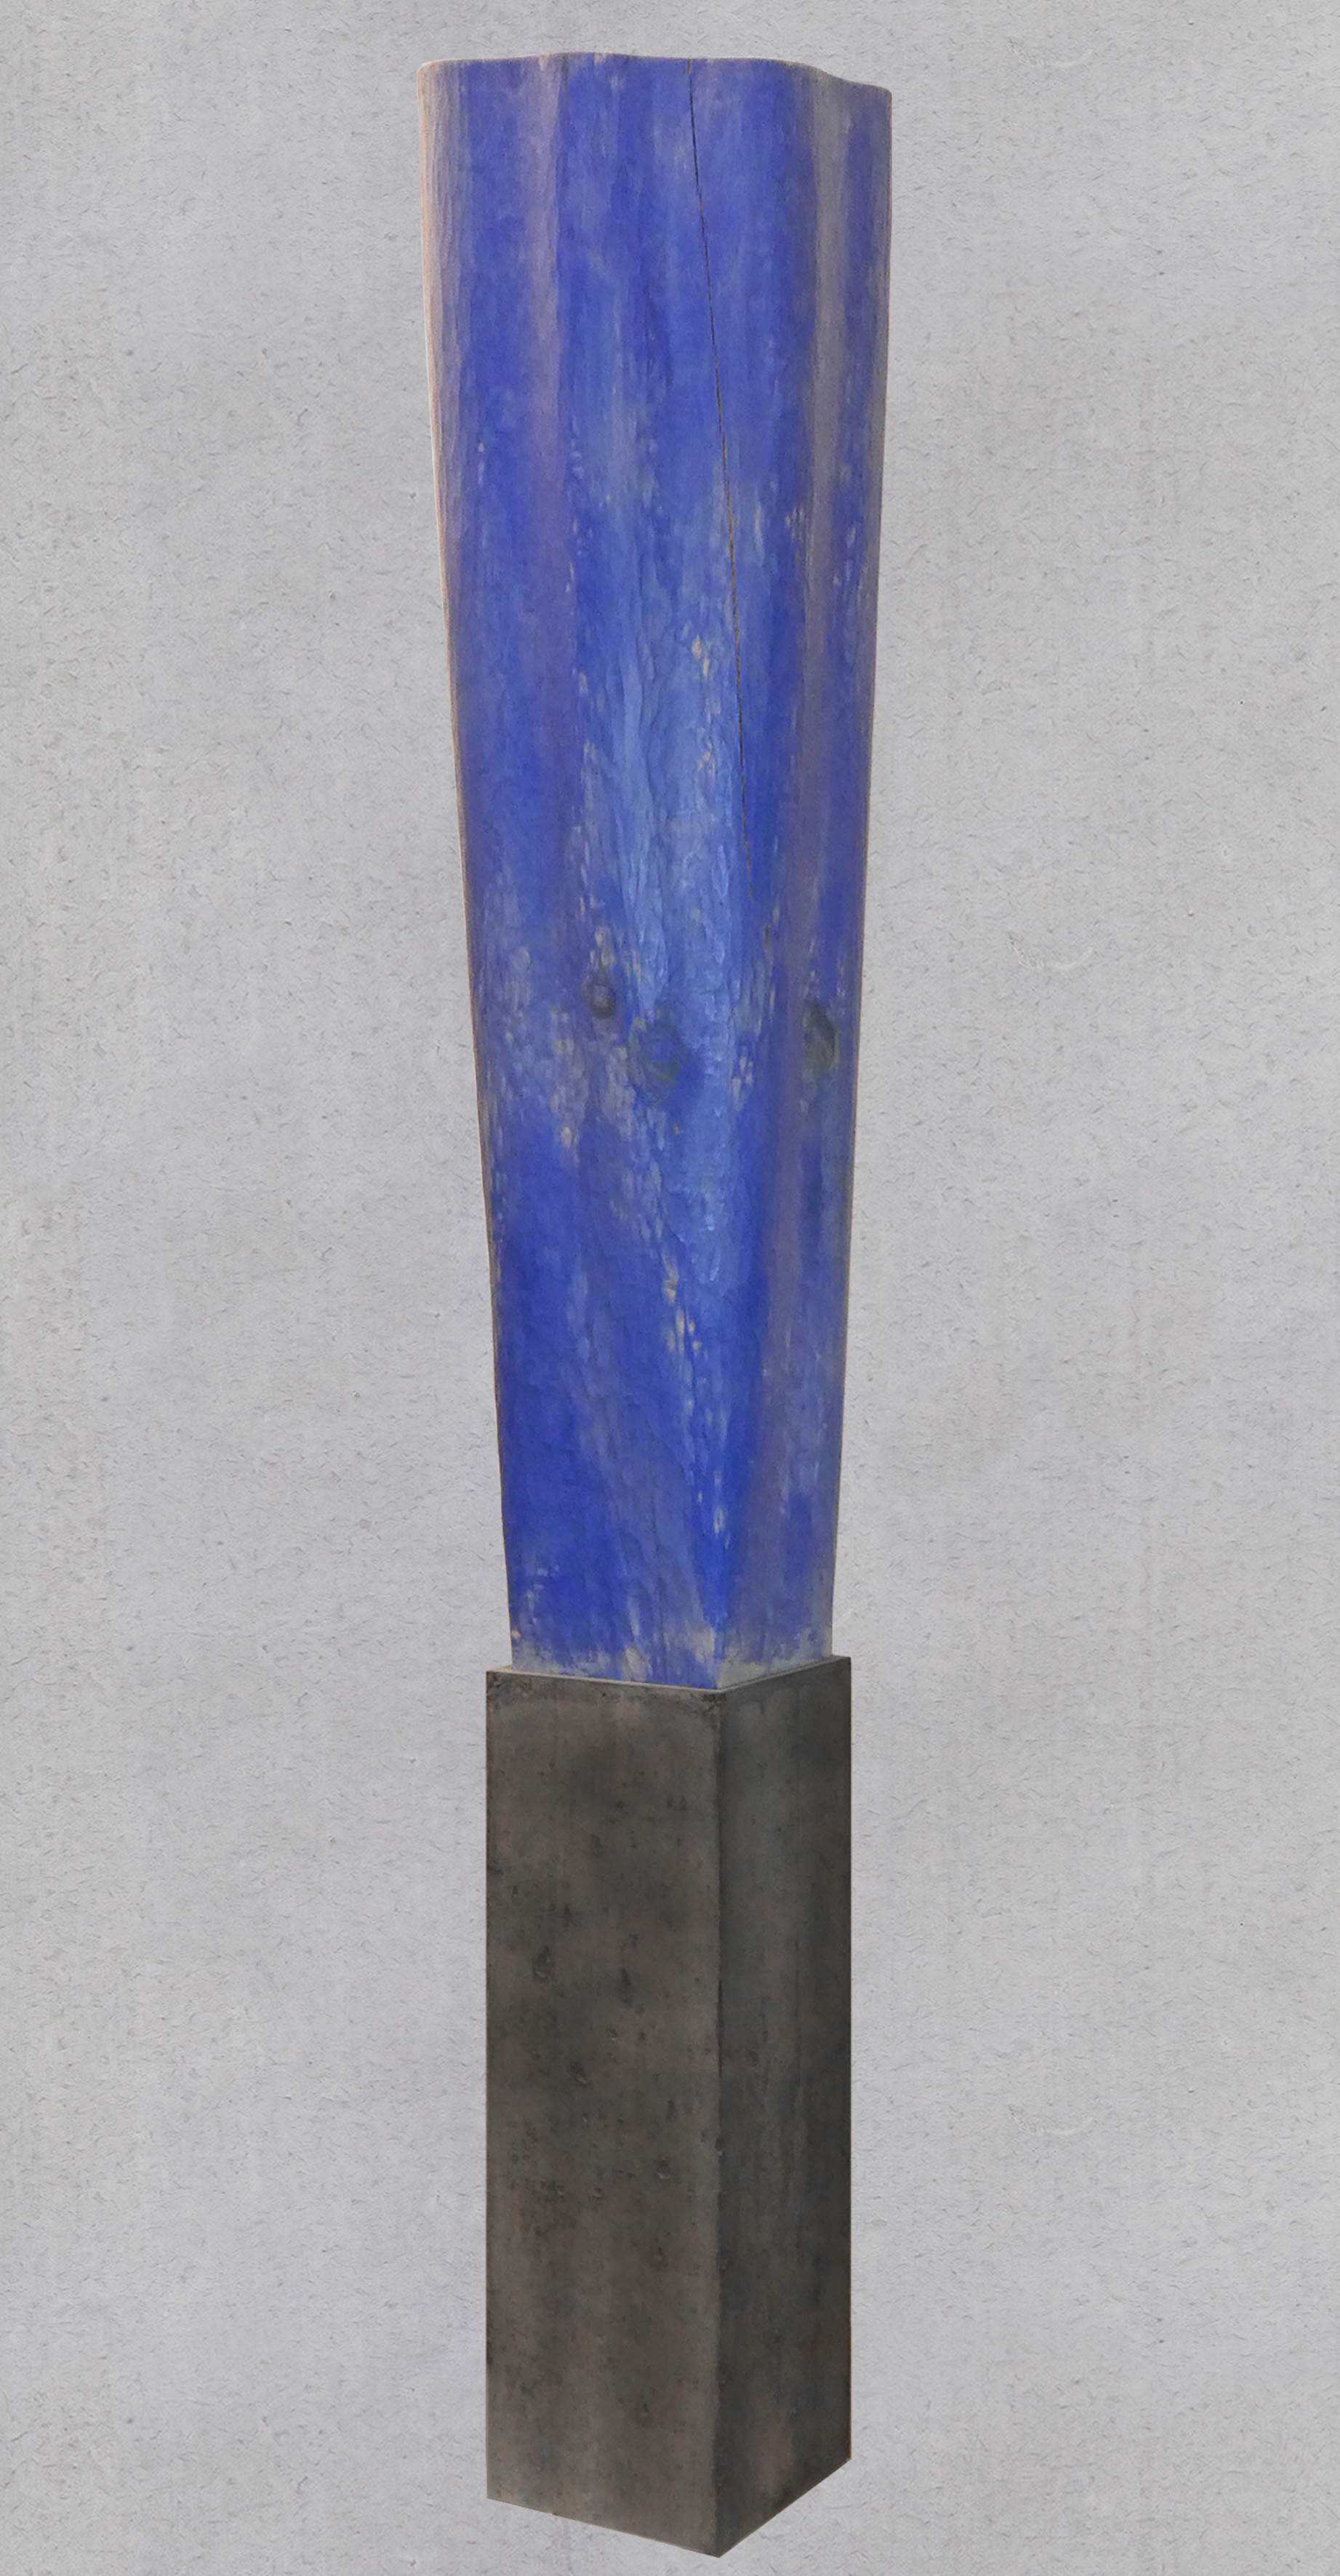 Skulptur Weymouths-Kiefer, Sockel Beton, Gesamthöhe 164 cm